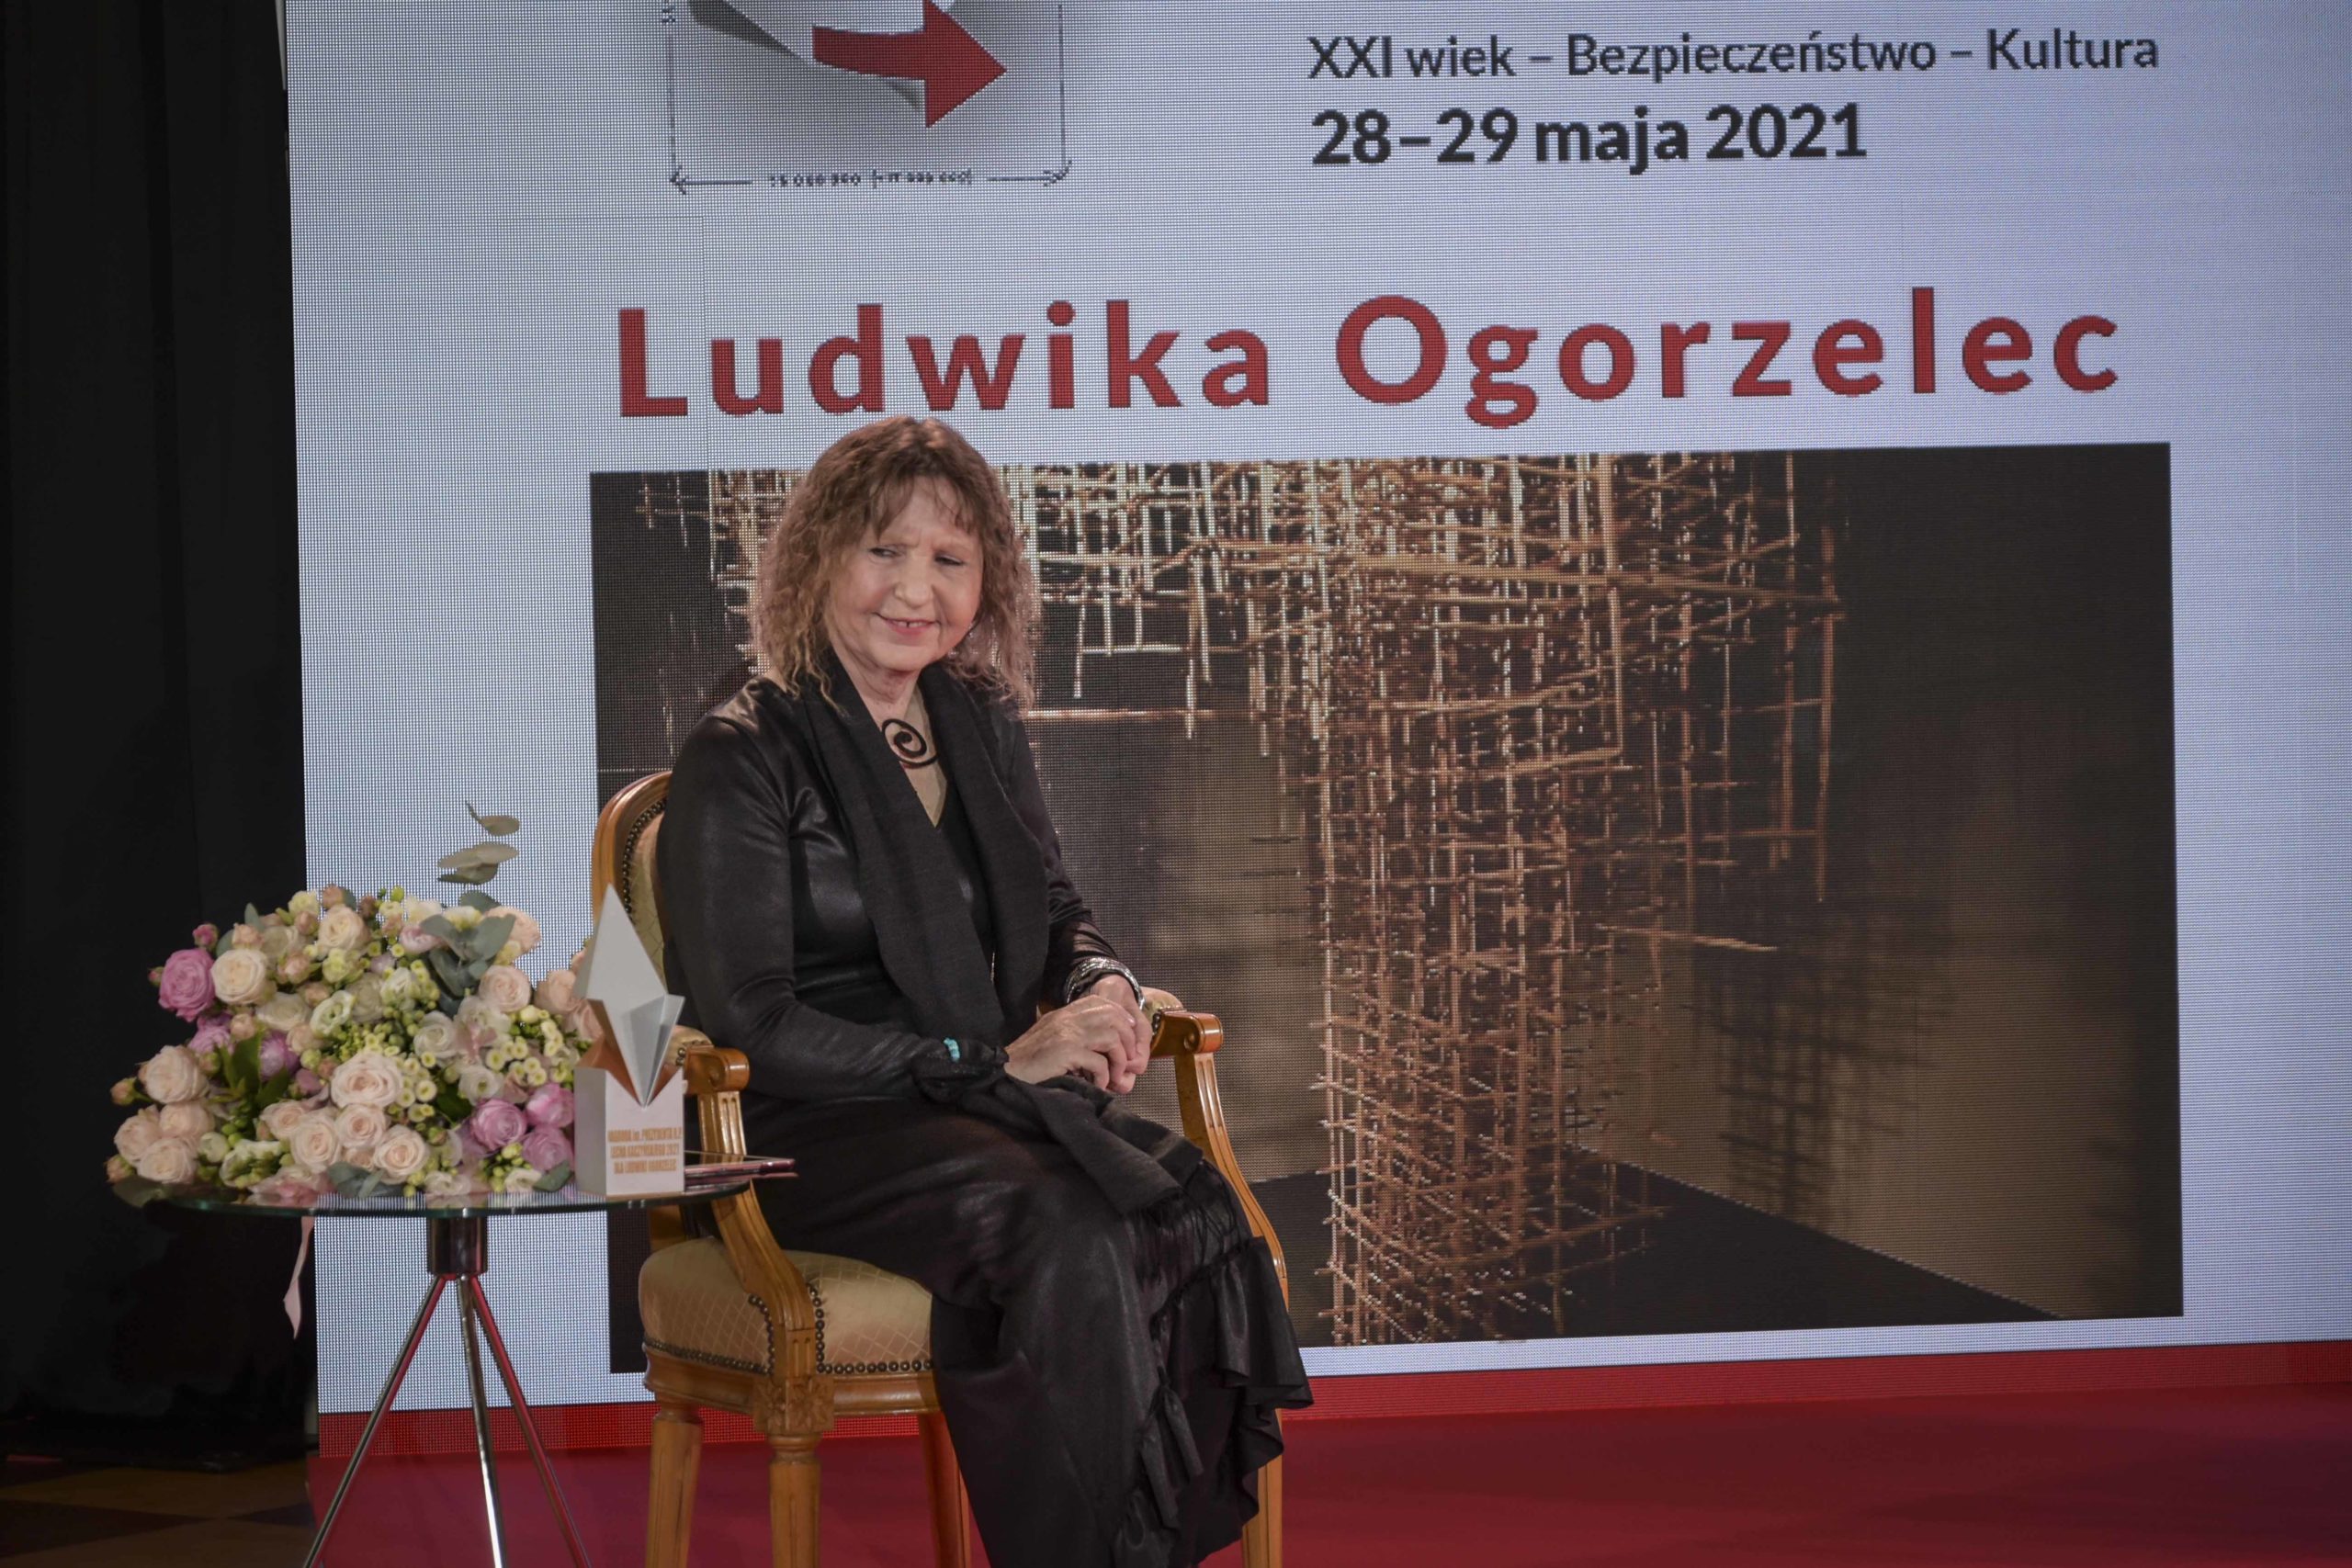 Ludwika Ogorzelec